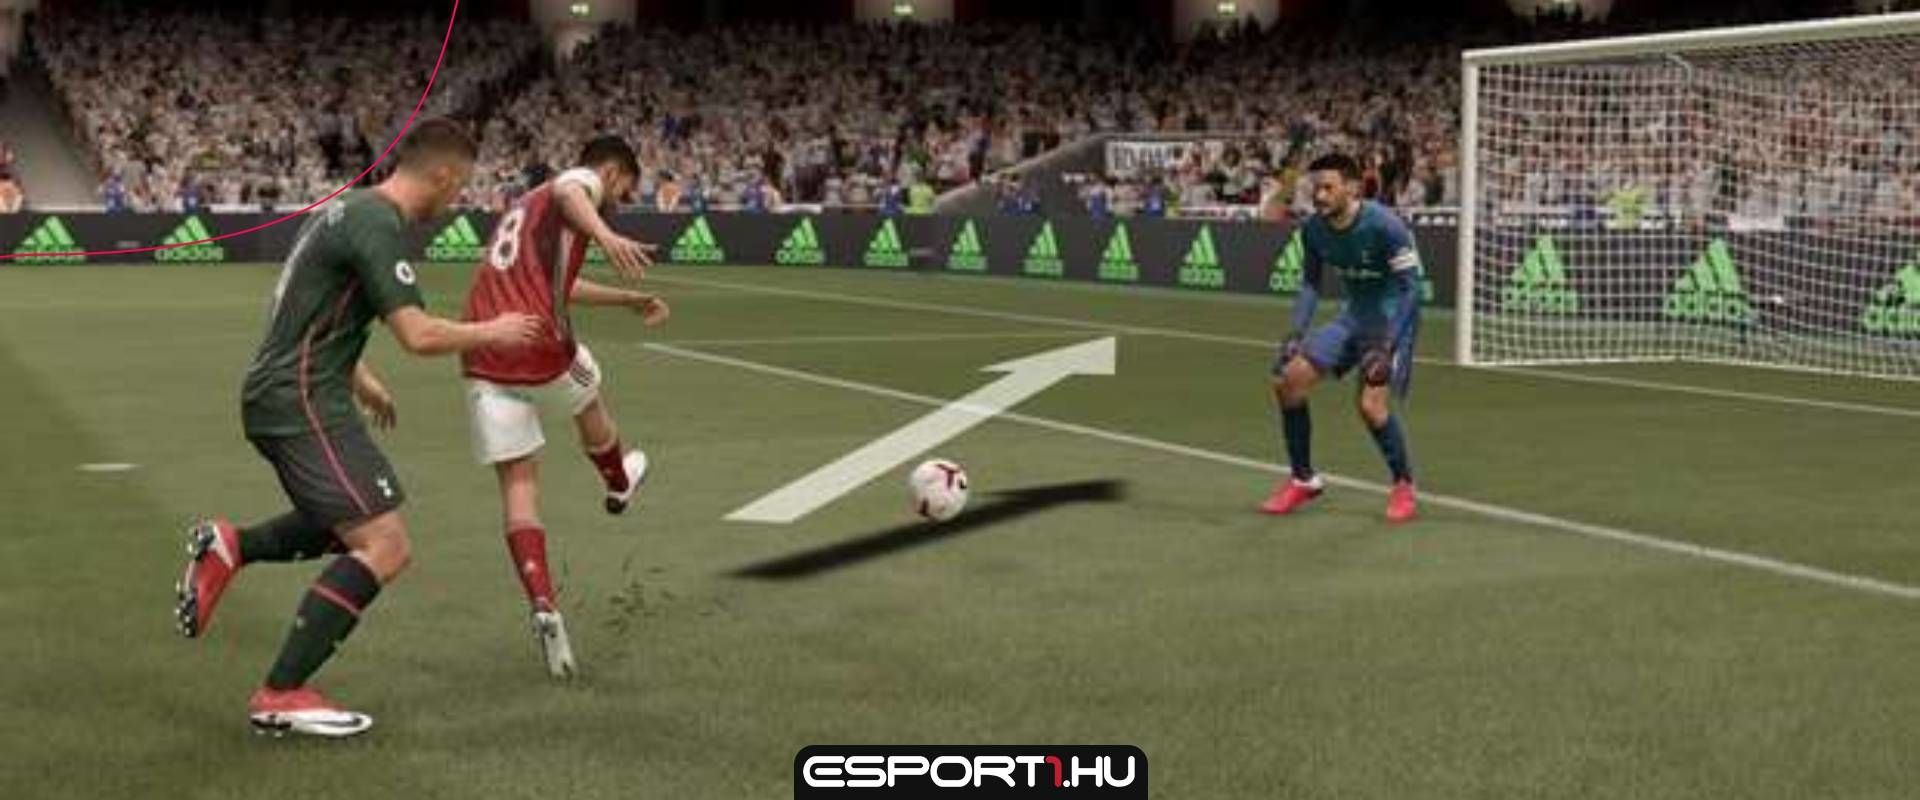 Az EA-nek bíróságon kell felelnie a FIFA játékokban található szkript miatt